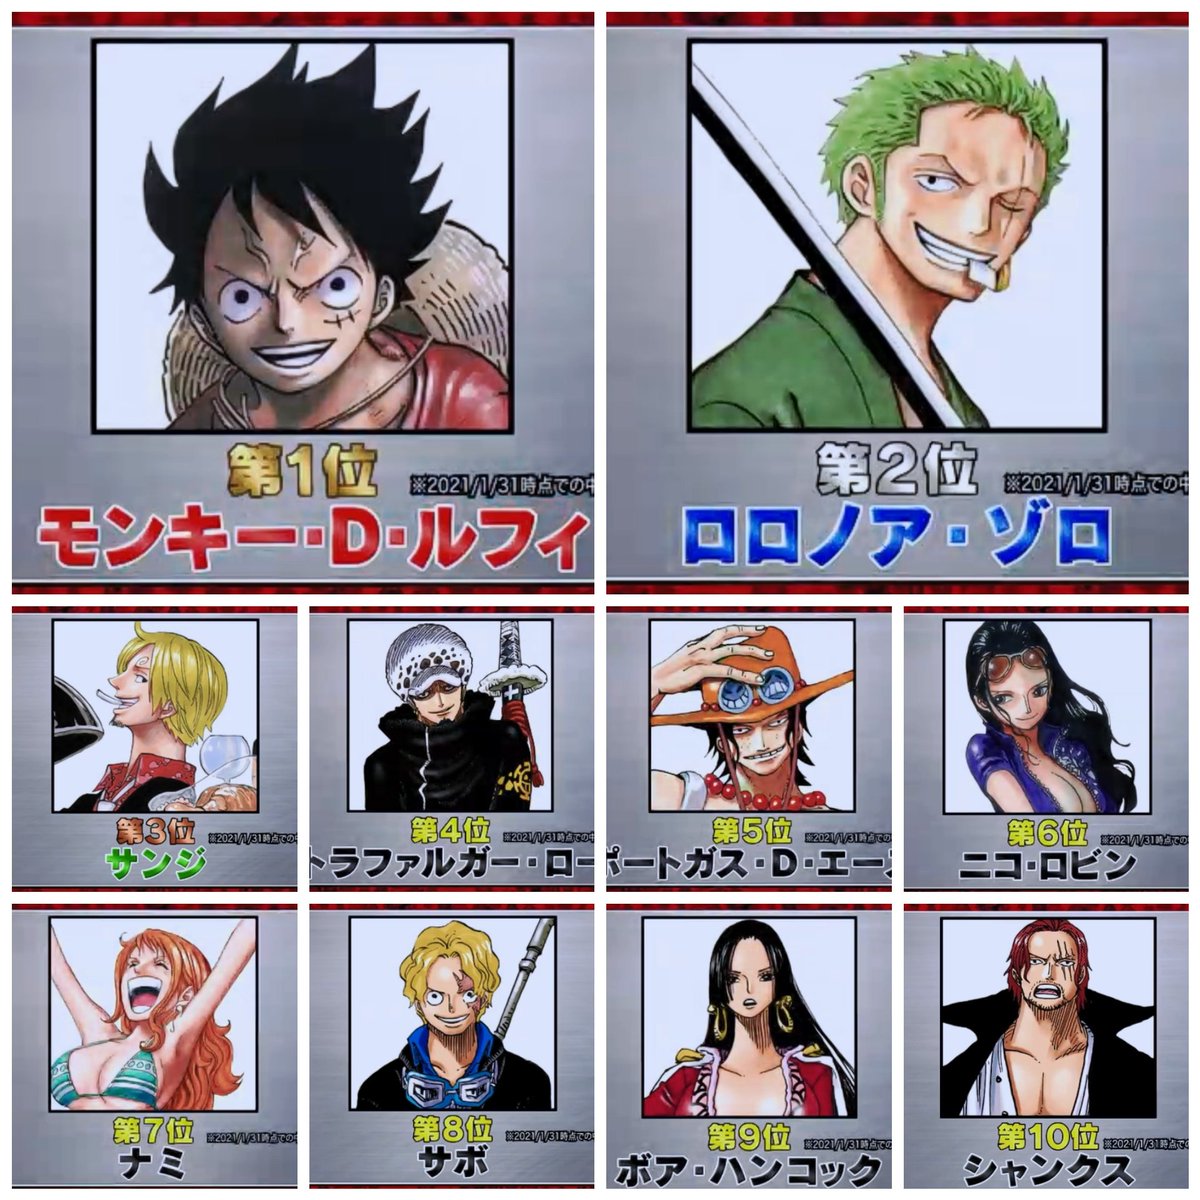 One Piece 世界キャラ人気投票 中間順位発表 1位ルフィ 2位ゾロ 3位サンジ 100位まで公開 2nn 2ちゃんねるニュース速報 ナビ